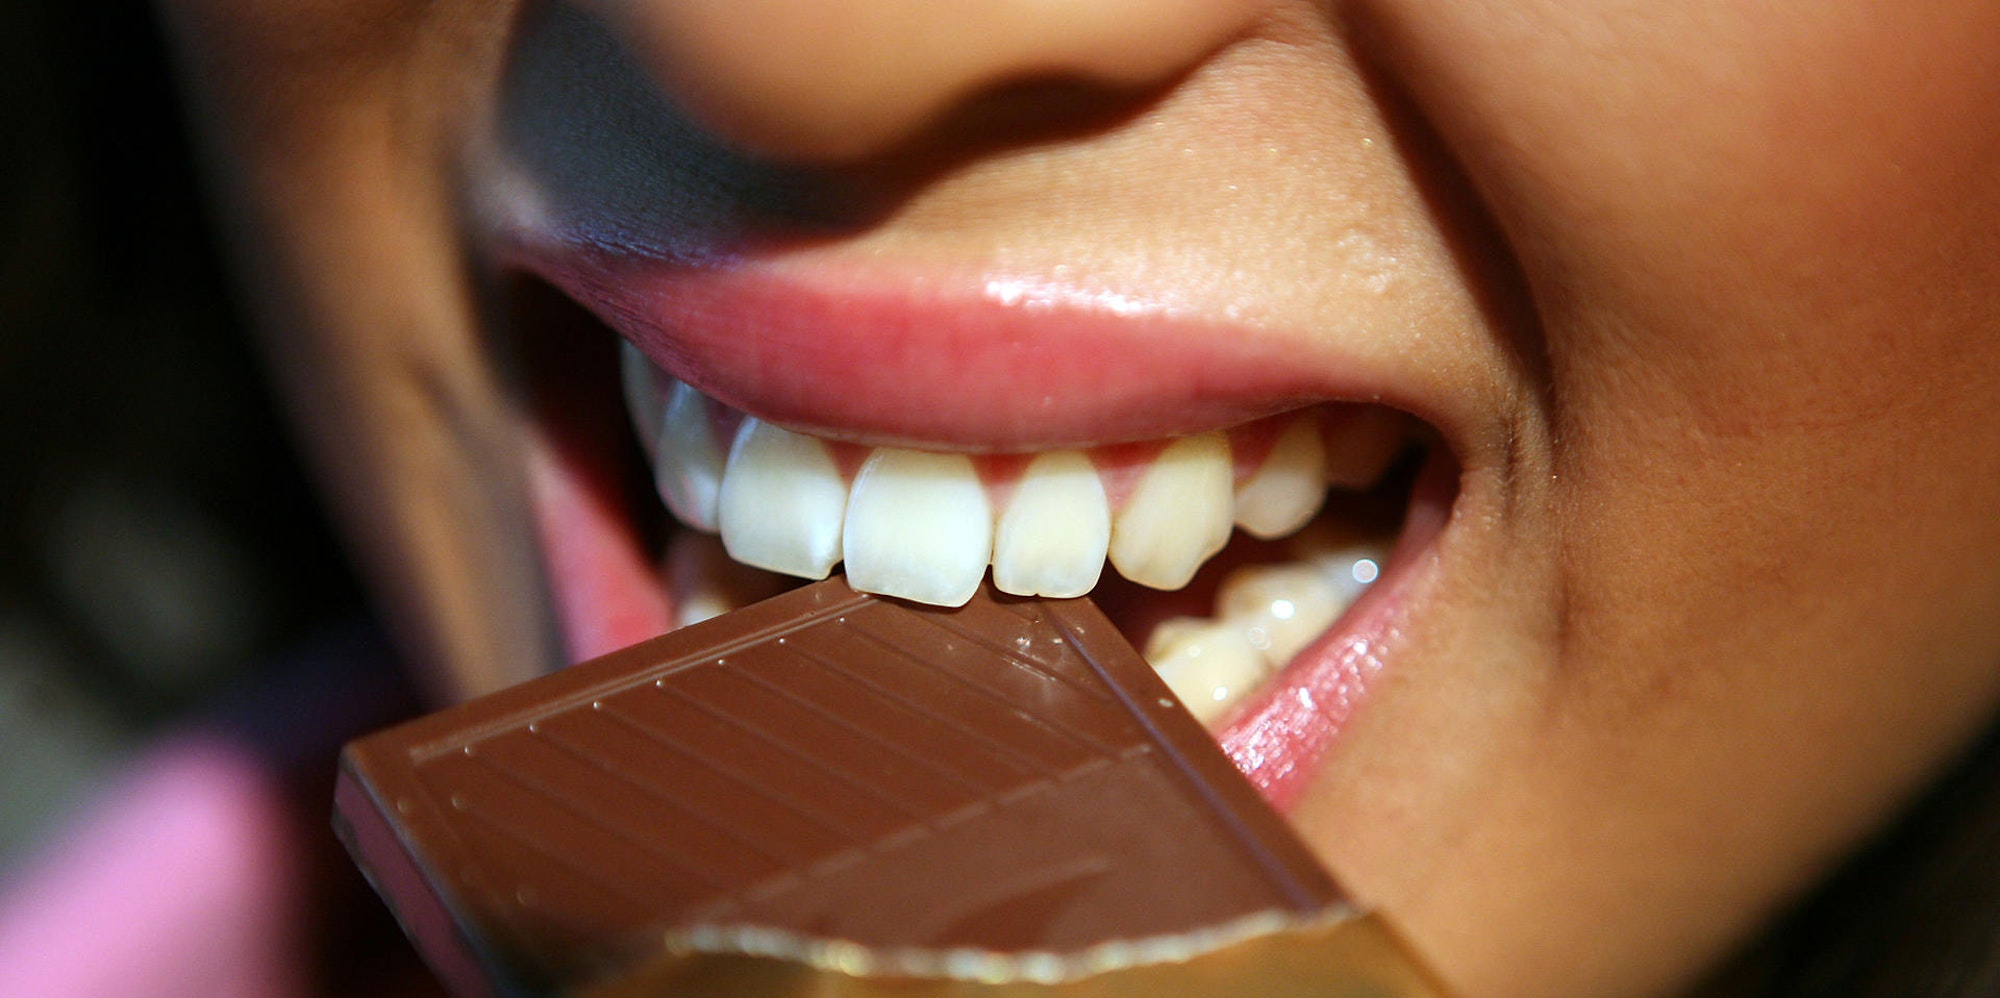 Frau beisst in Schokolade Süßigkeit